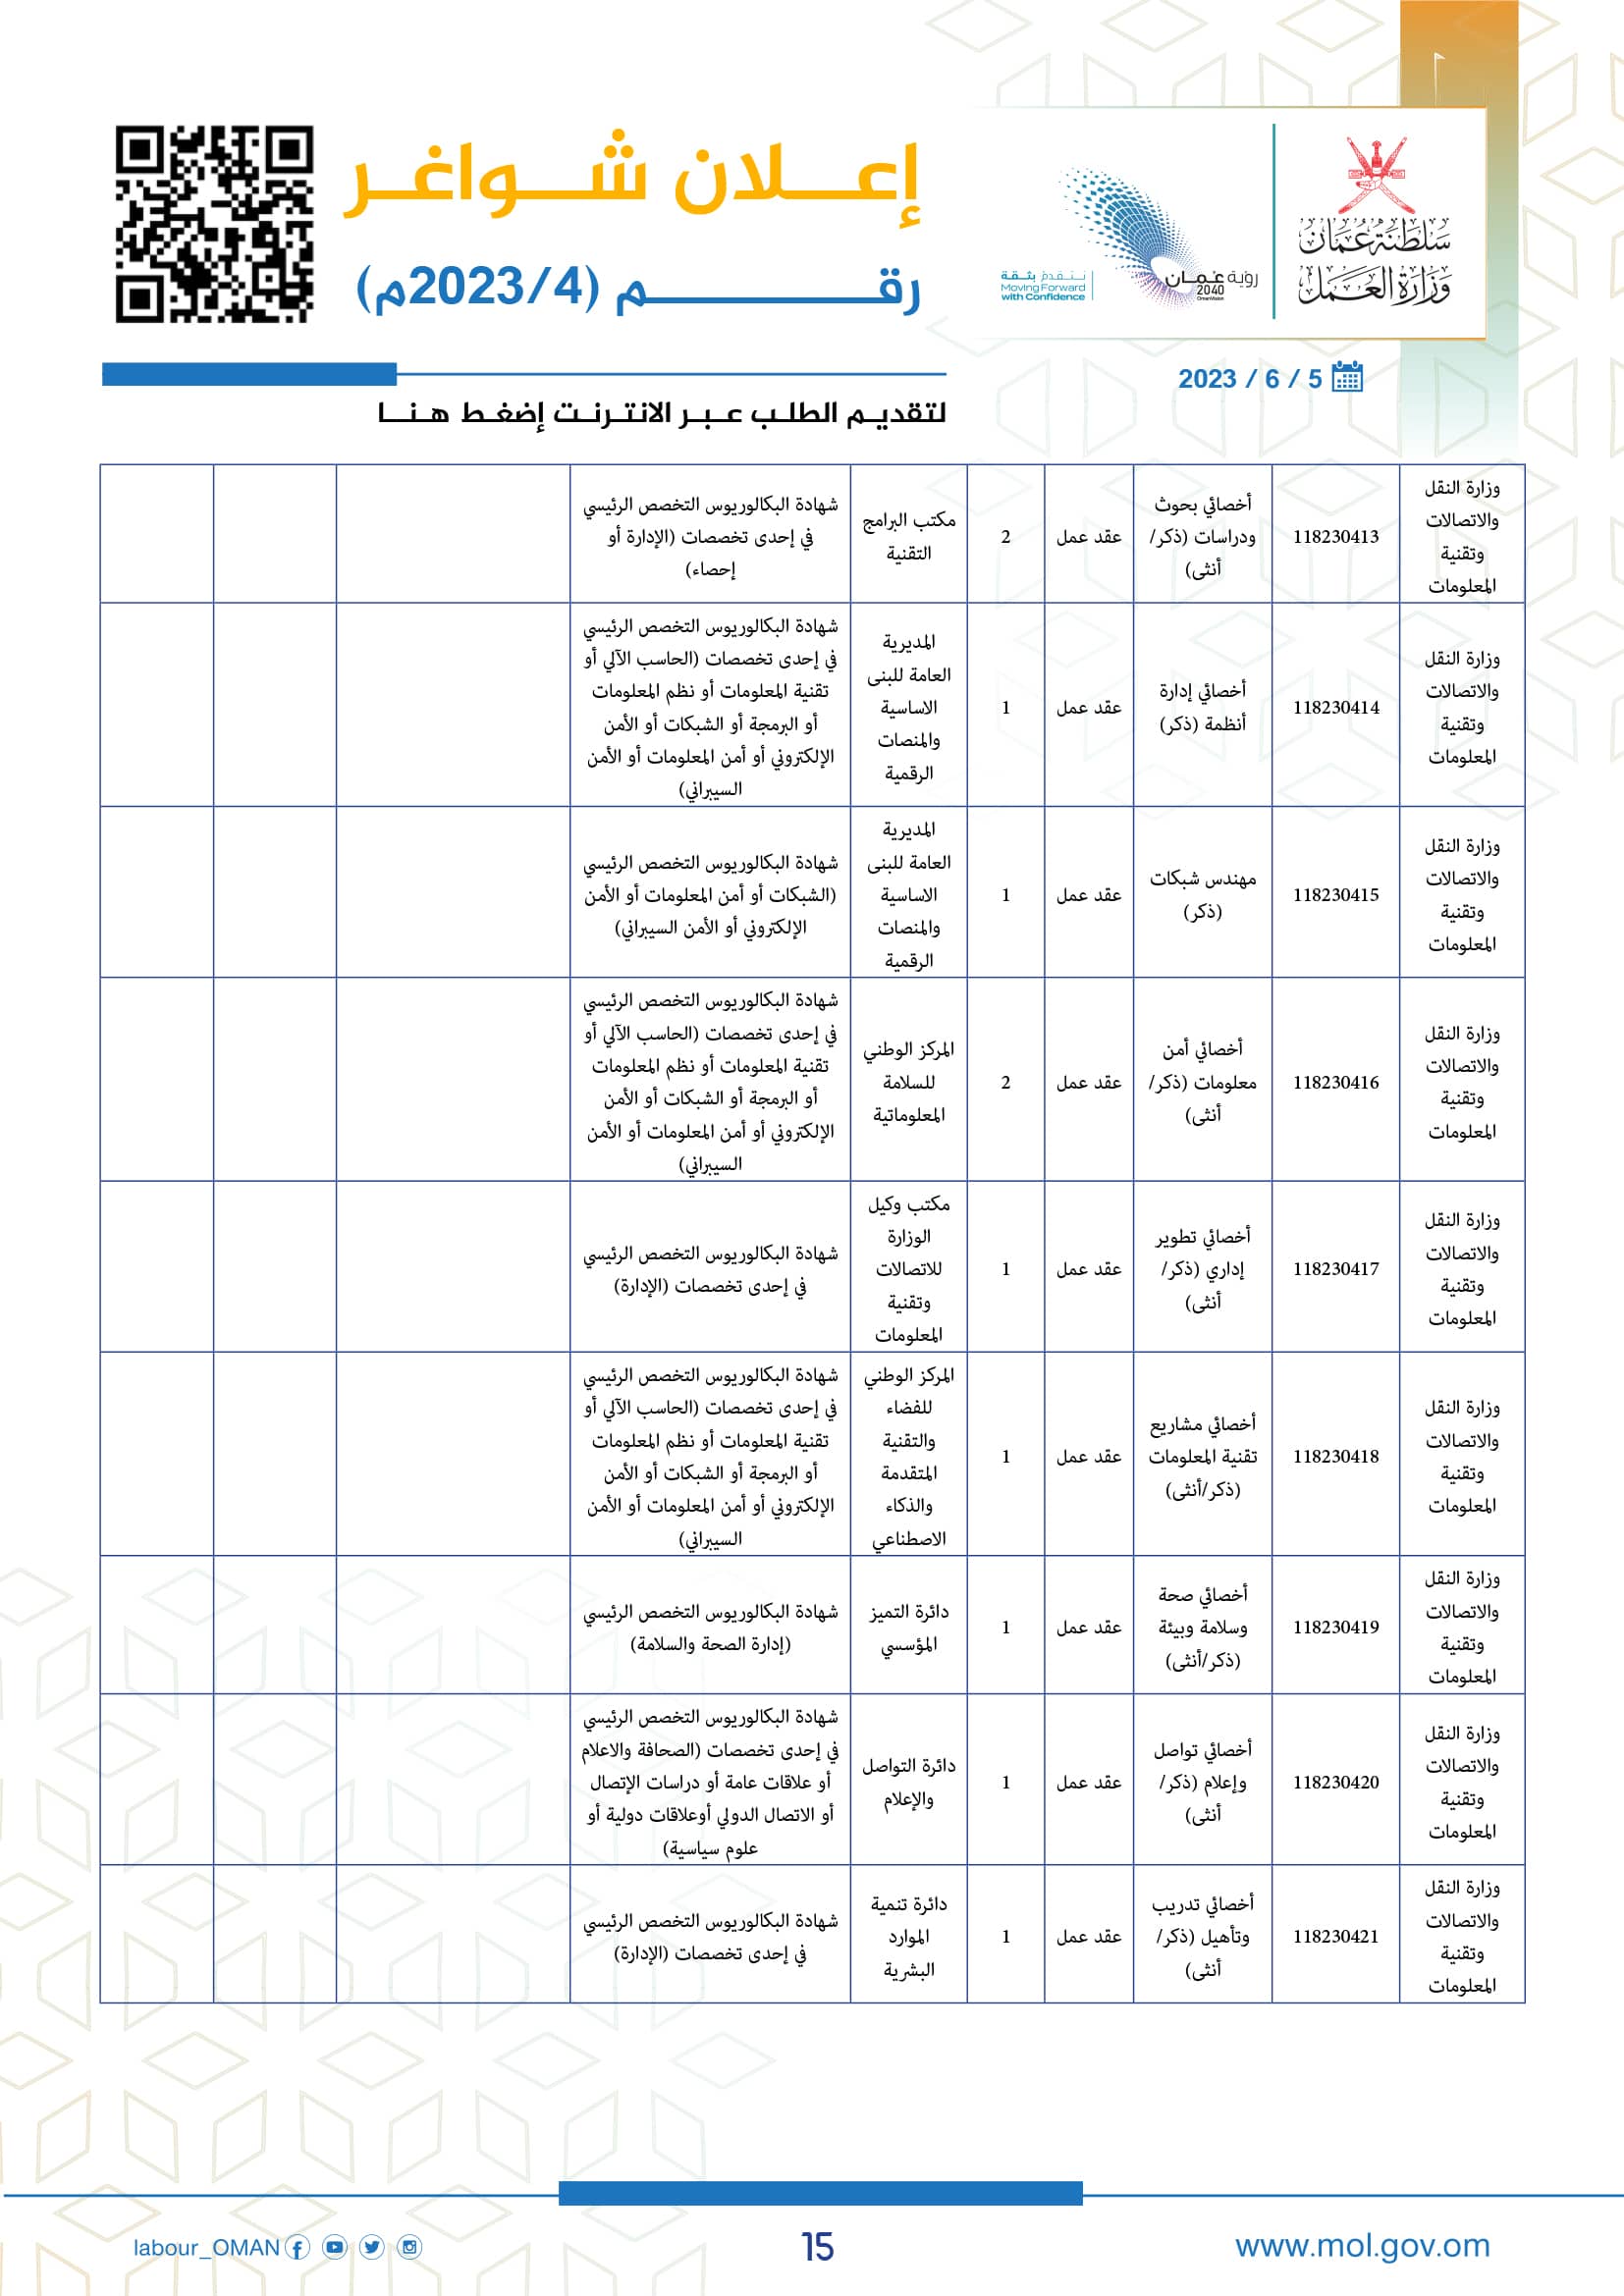 وظائف وزارة العمل سلطنة عمان اليوم - وزارة العمل الوظائف - وظائف سلطنة عمان اليوم 